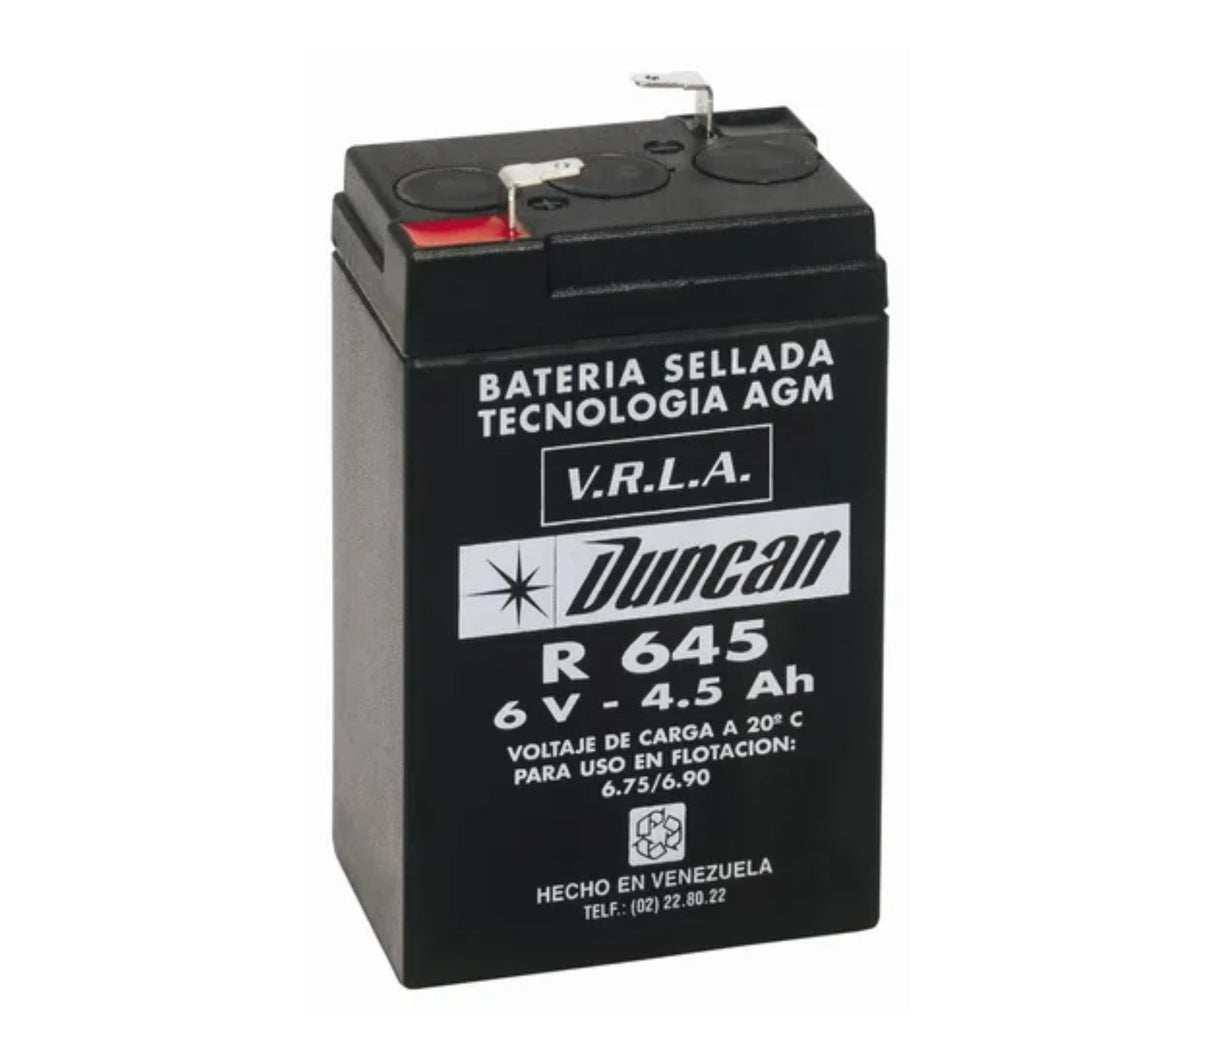 Las mejores ofertas en Las Baterías AGM Baterías